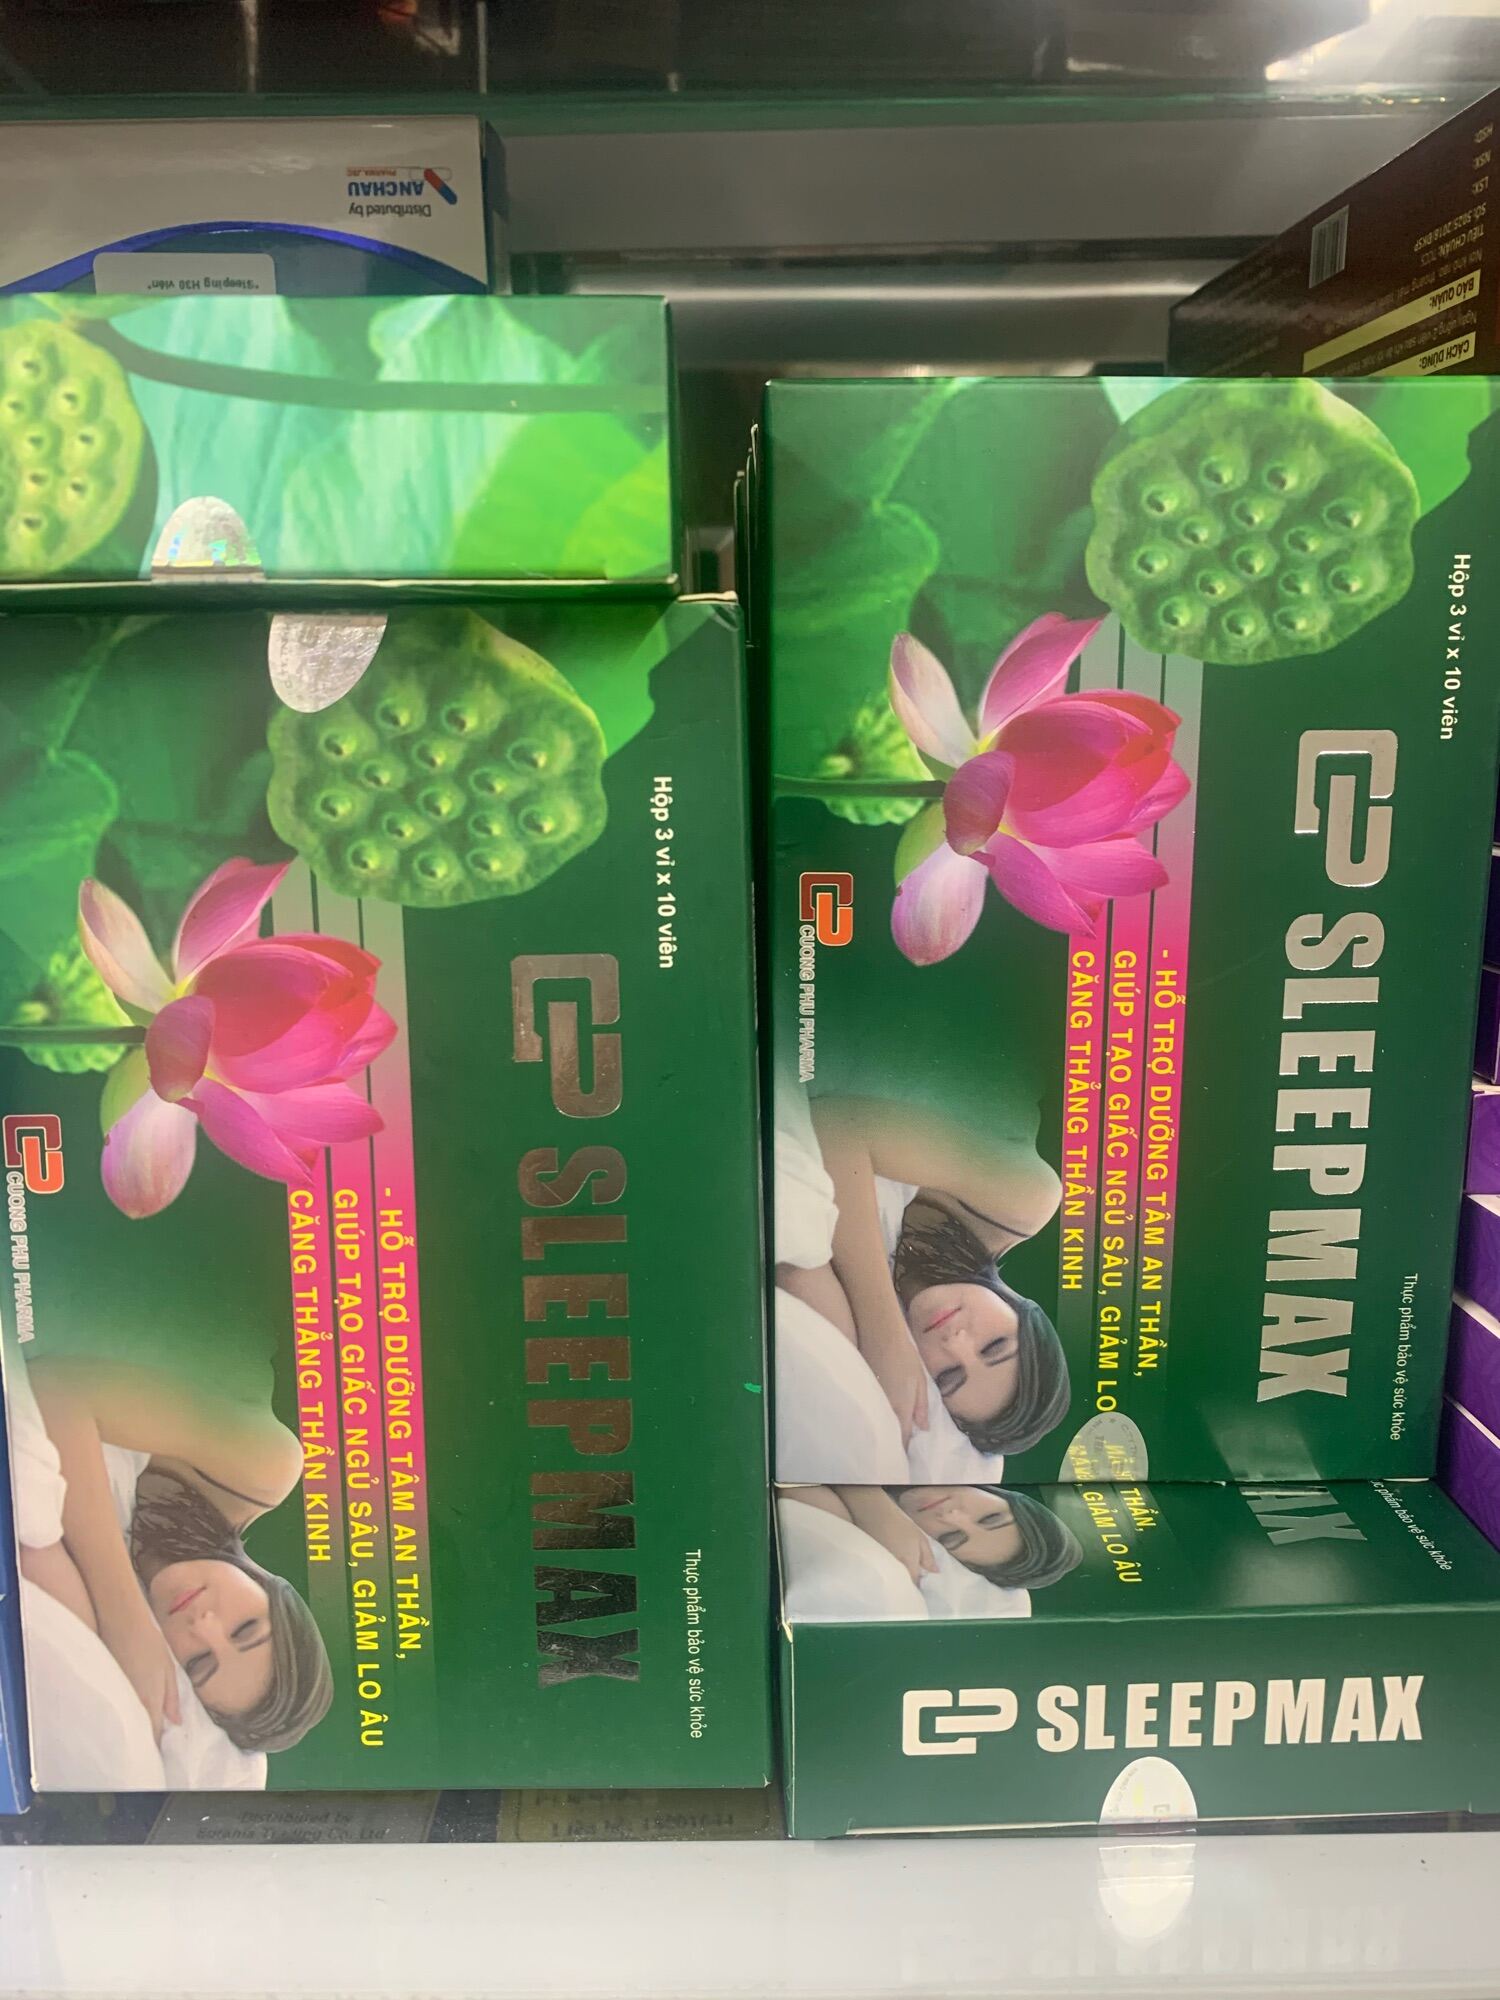 Sleepmax Cường Phú - Dưỡng tâm an thần - Tạo giấc ngủ sâu